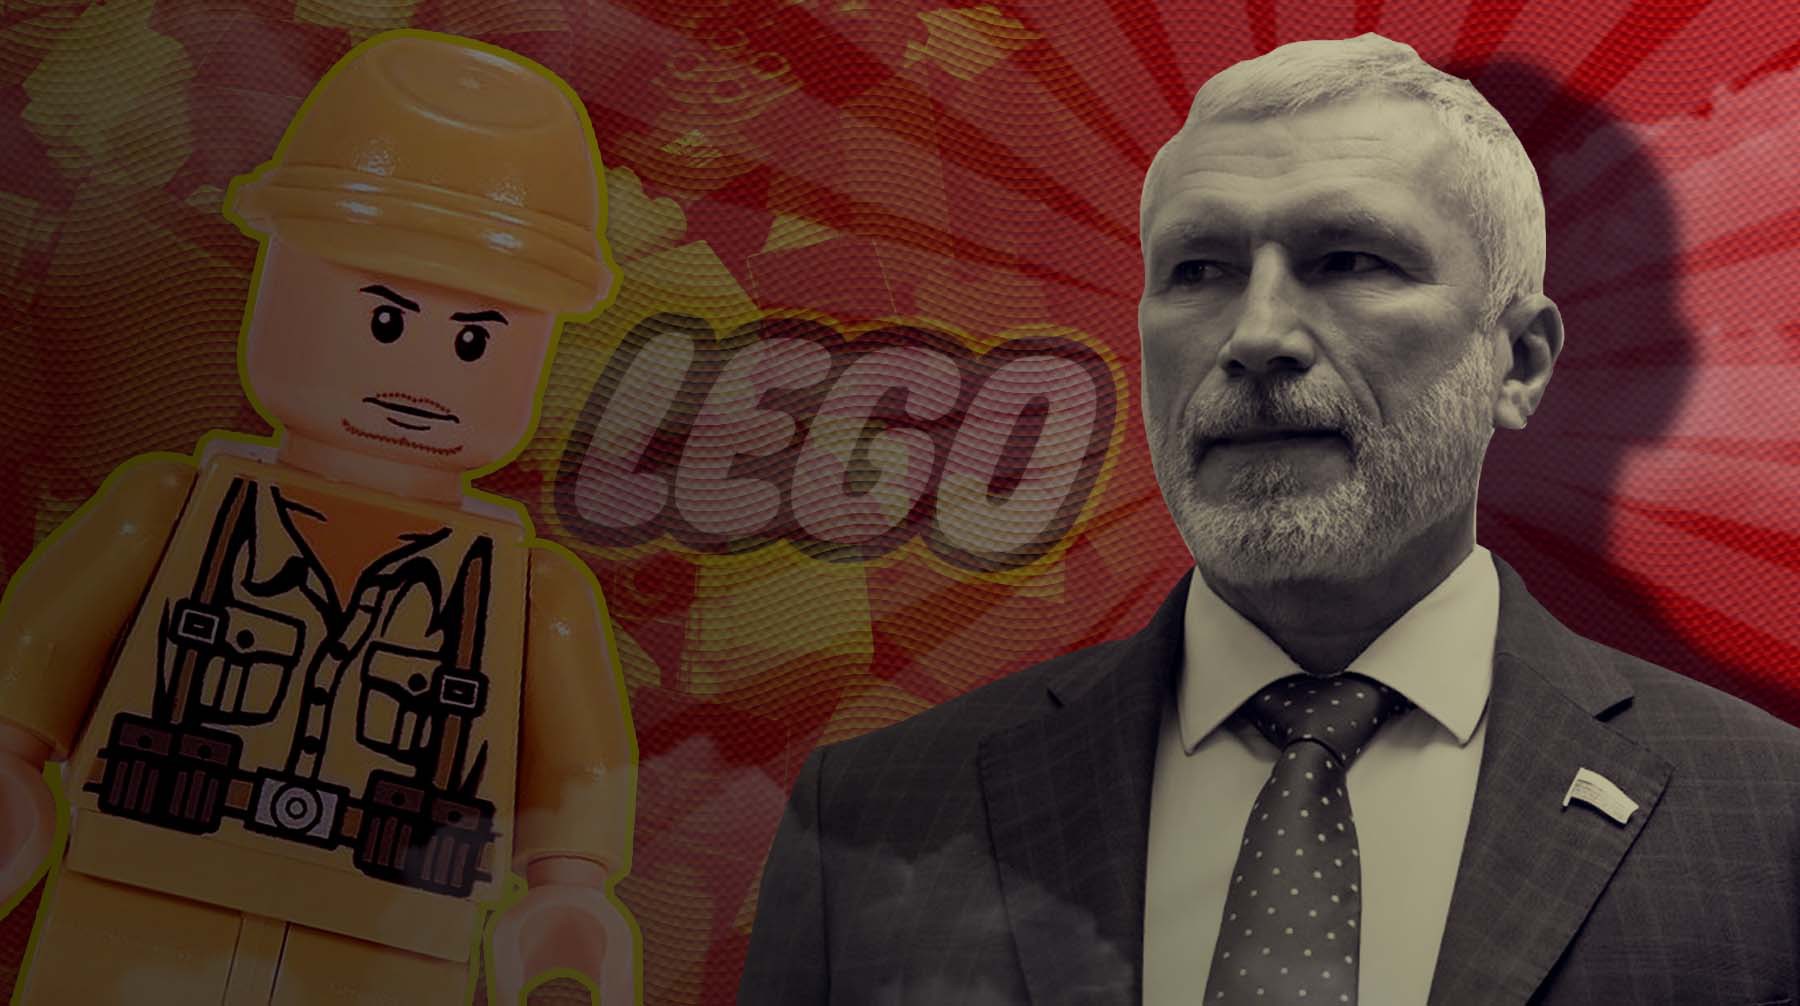 Dailystorm - LEGO опровергла слова депутата Журавлева о конструкторах с символикой нацизма